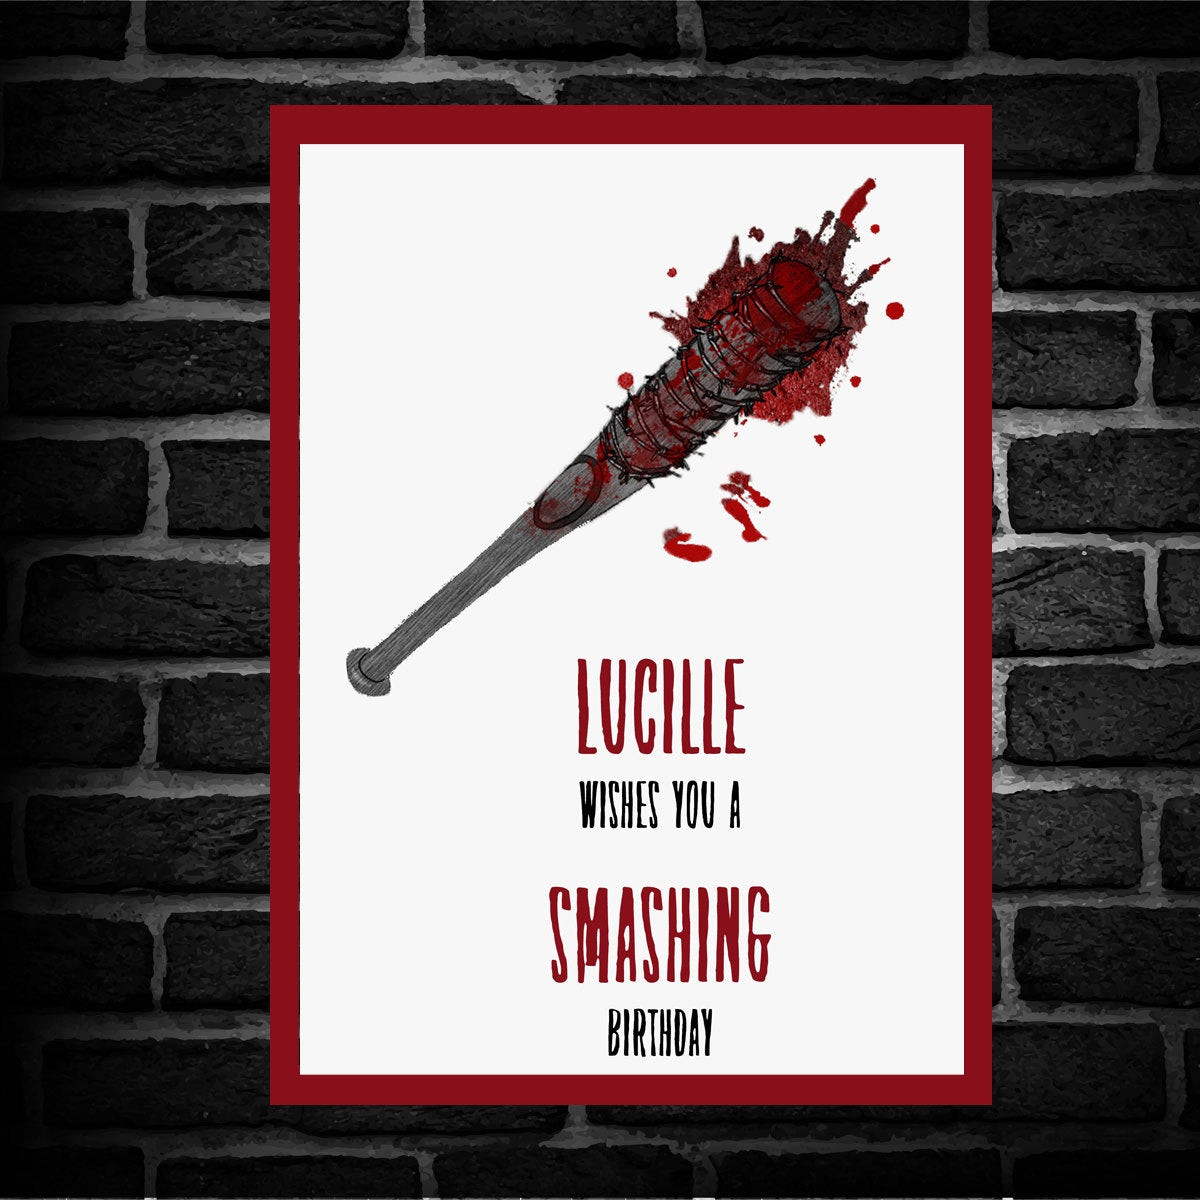 Best ideas about Walking Dead Birthday Card
. Save or Pin The Walking Dead Lucille Birthday Card printed Keegan Now.